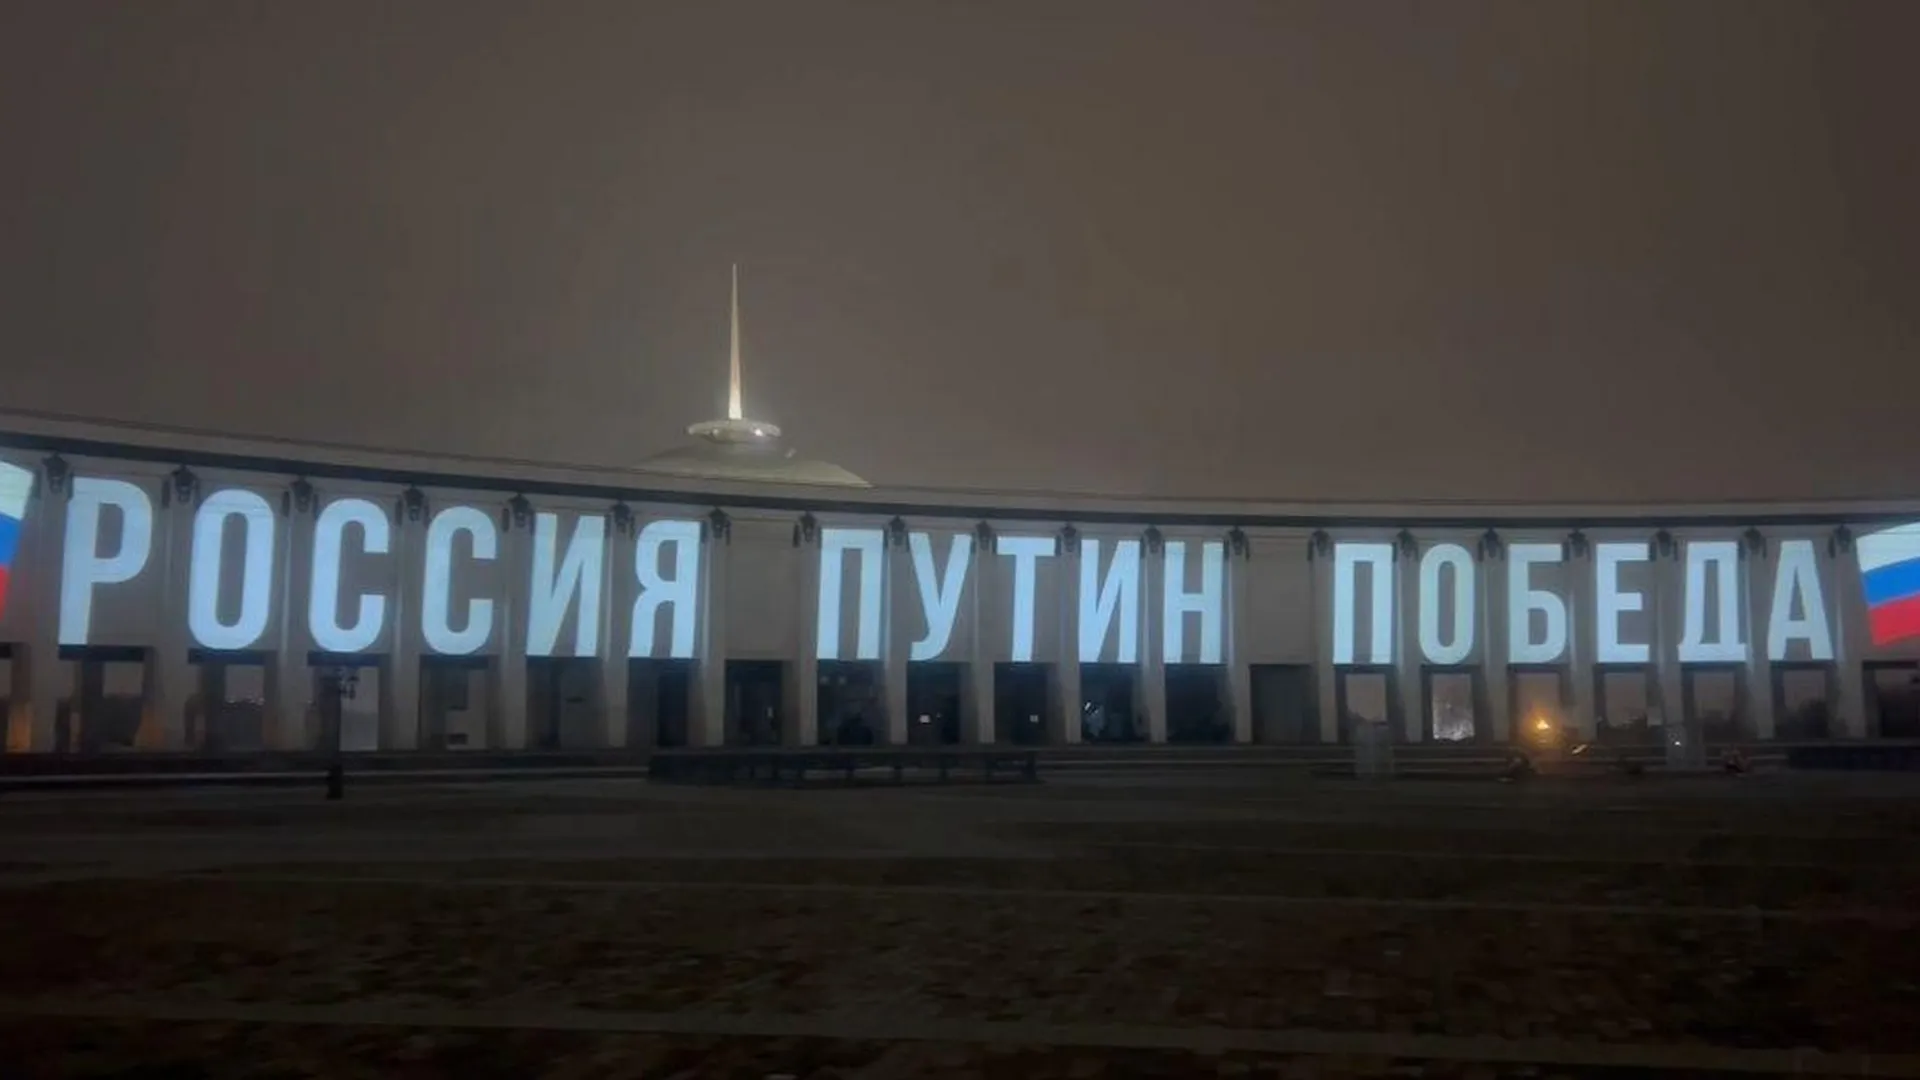 Посвященная выборам инсталляция появилась в Москве на здании музея Победы